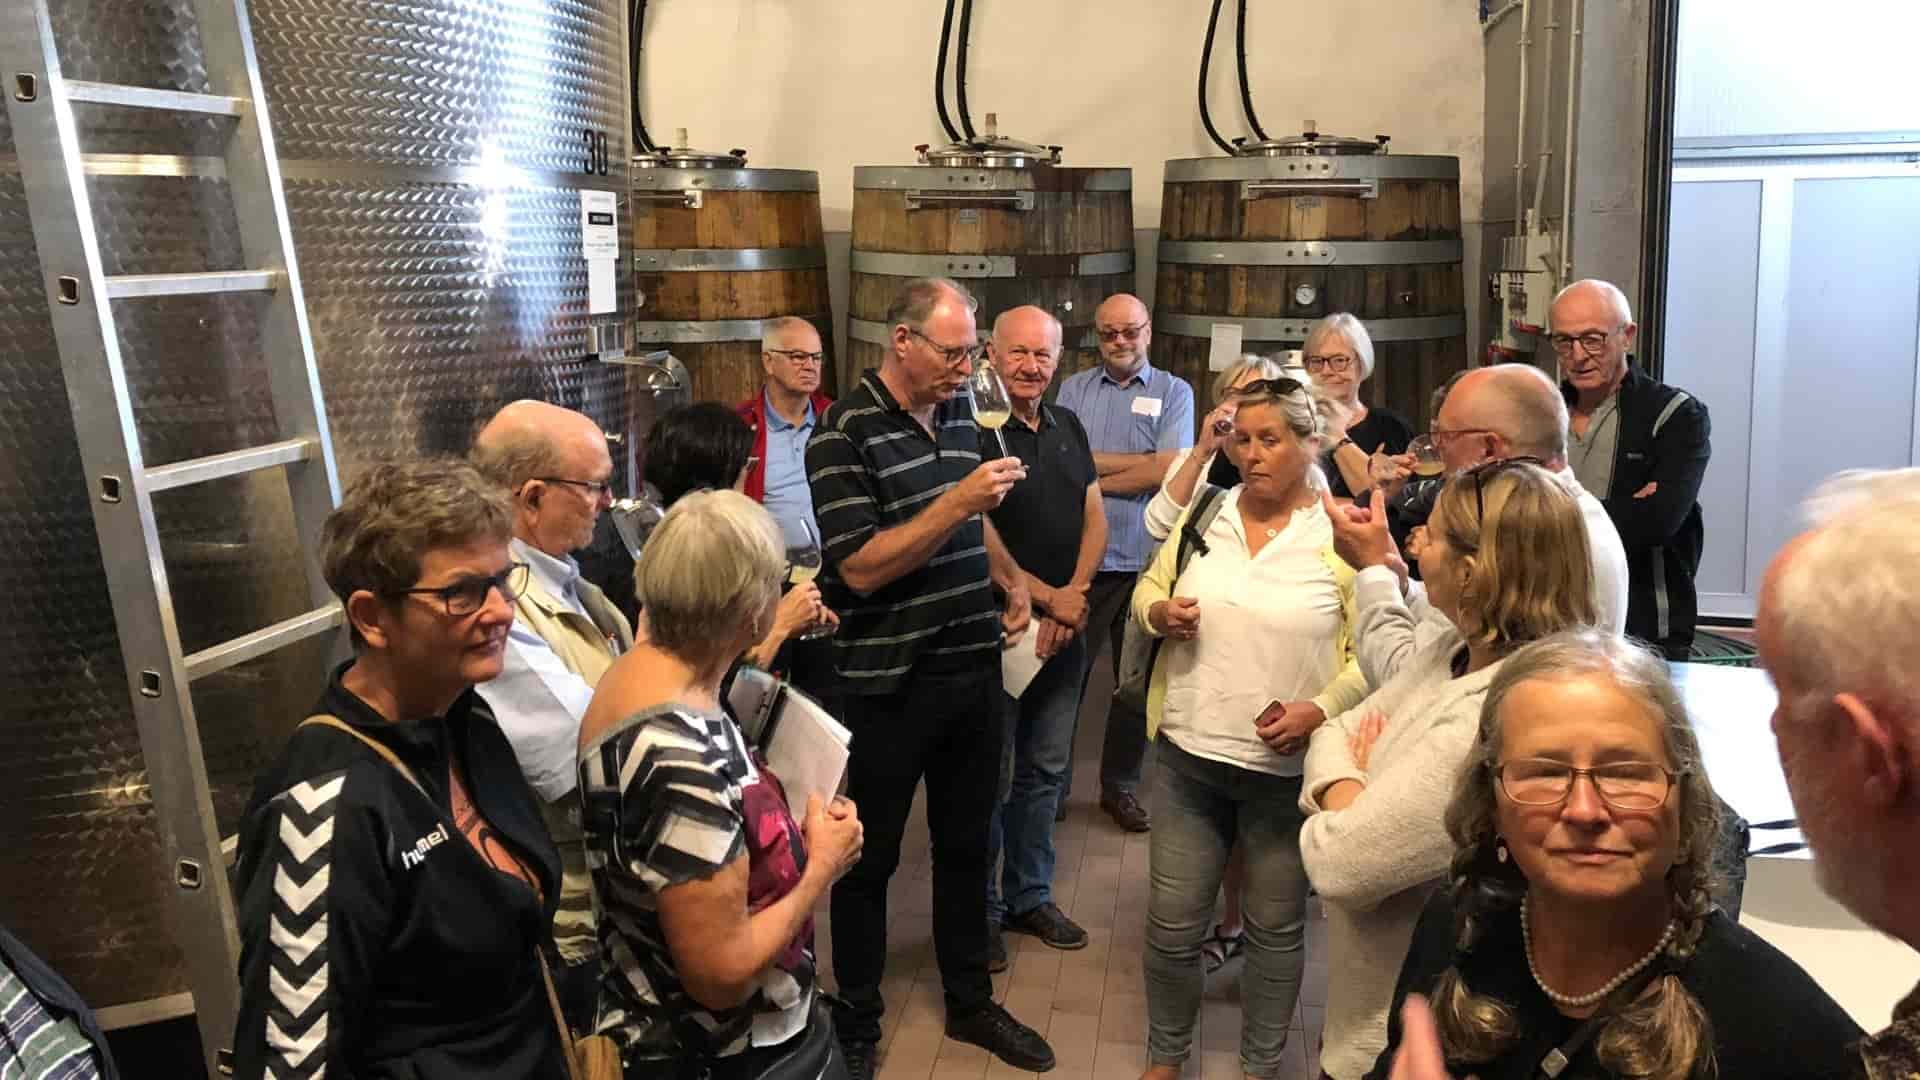 Visita del nostro importatore dalla Danimarca in cantina nel Friulano, degustazione vini.